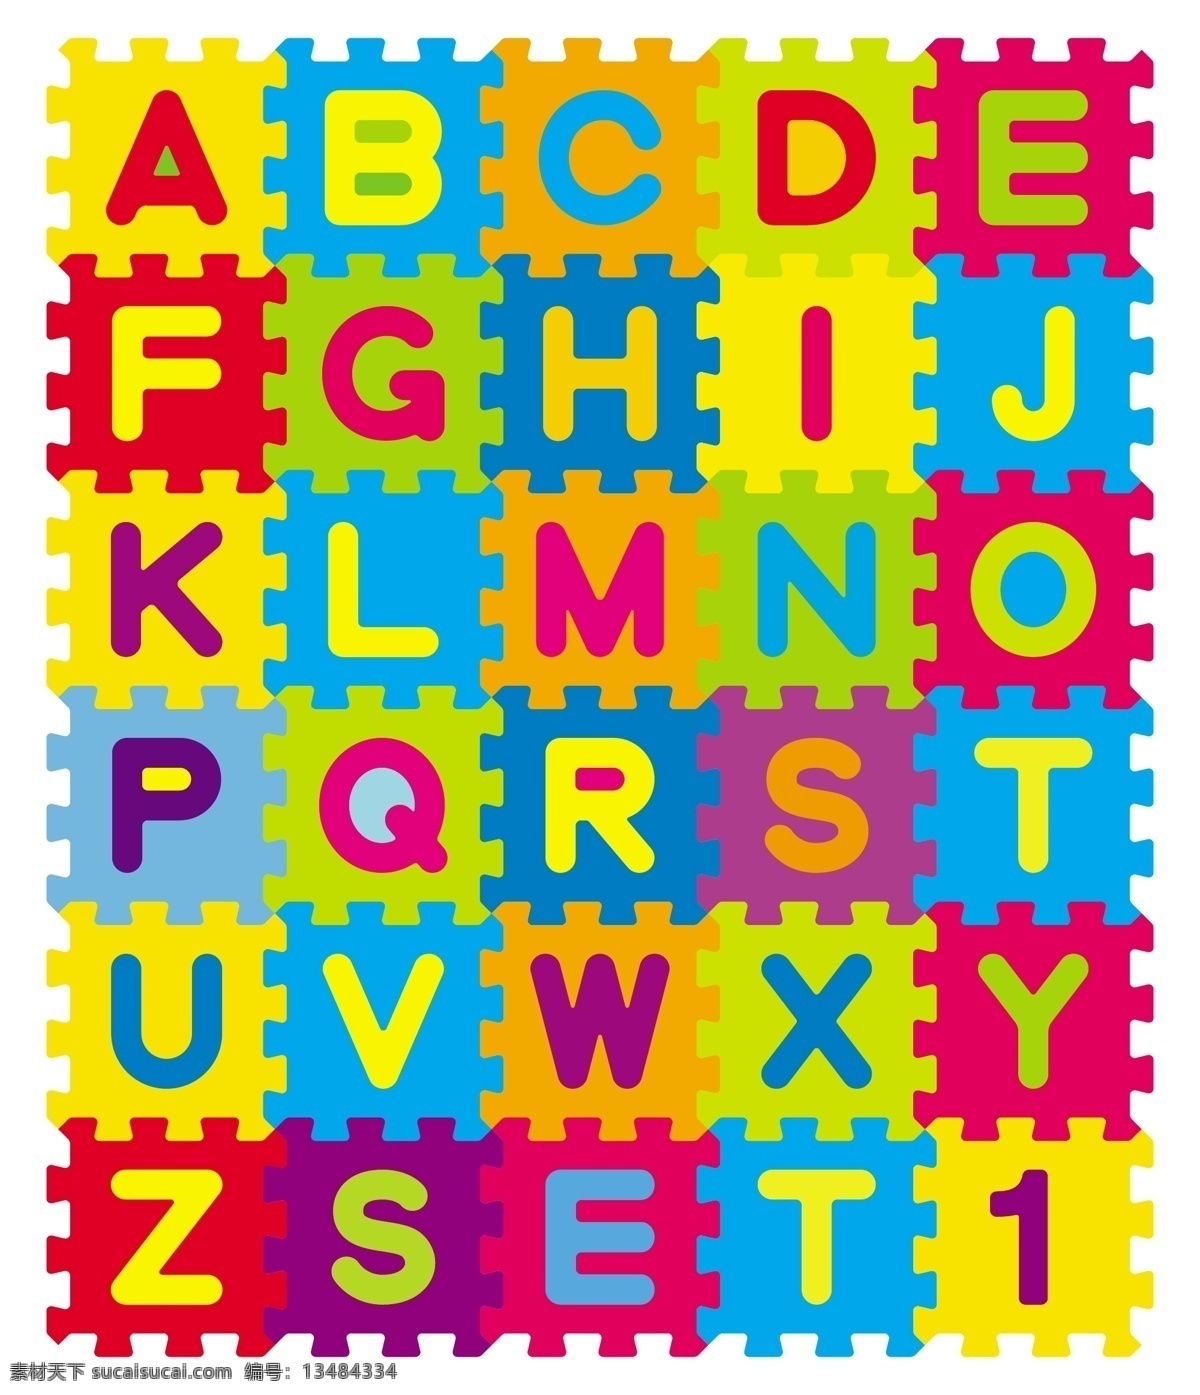 字母 拼图 设计素材 彩色拼图 字母设计 彩色字母 卡通字母 字体 艺术字体 英文字母 字体设计 矢量素材 其他艺术 文化艺术 黄色